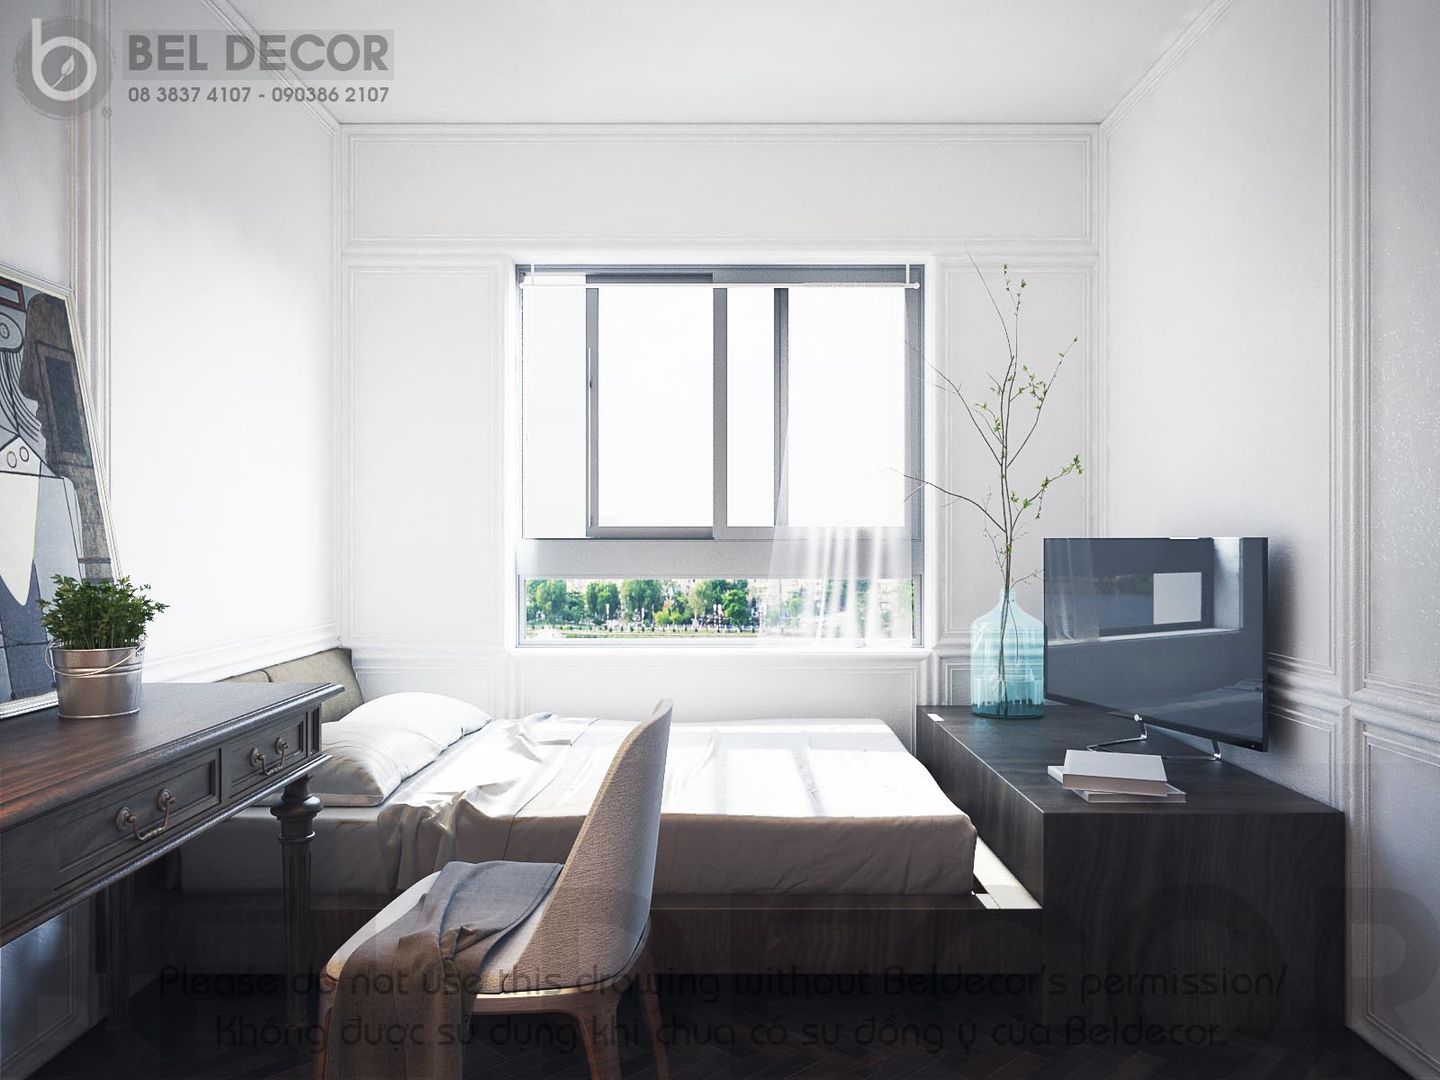 Project: HO1551 Apartment/ Bel Decor, Bel Decor Bel Decor